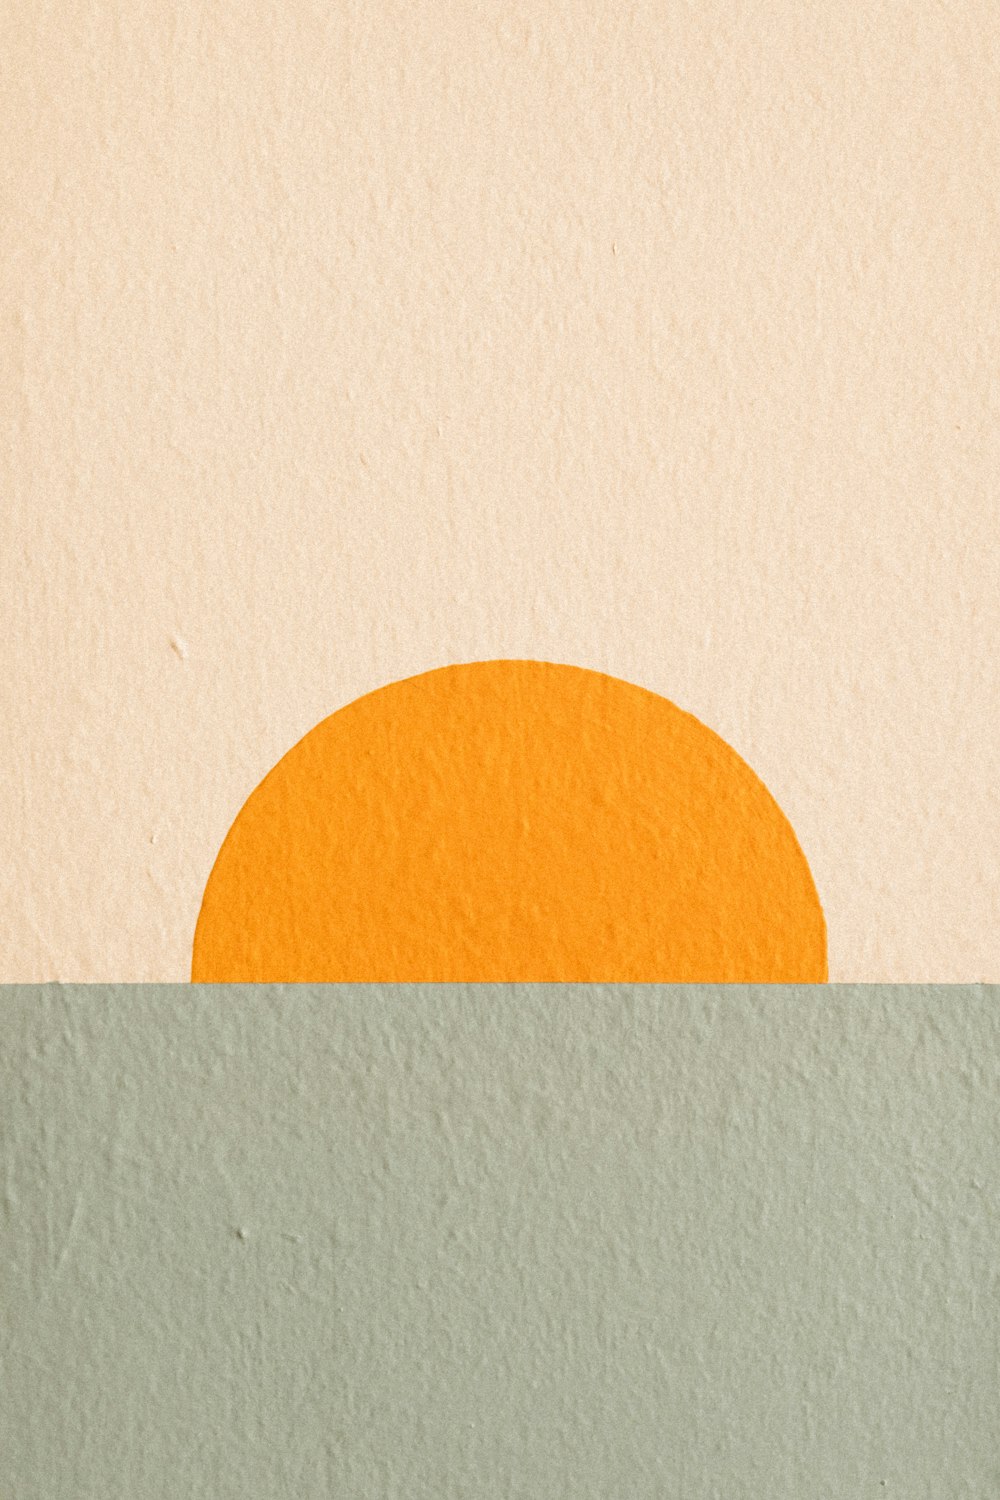 수역 한가운데에 있는 주황색 태양의 그림